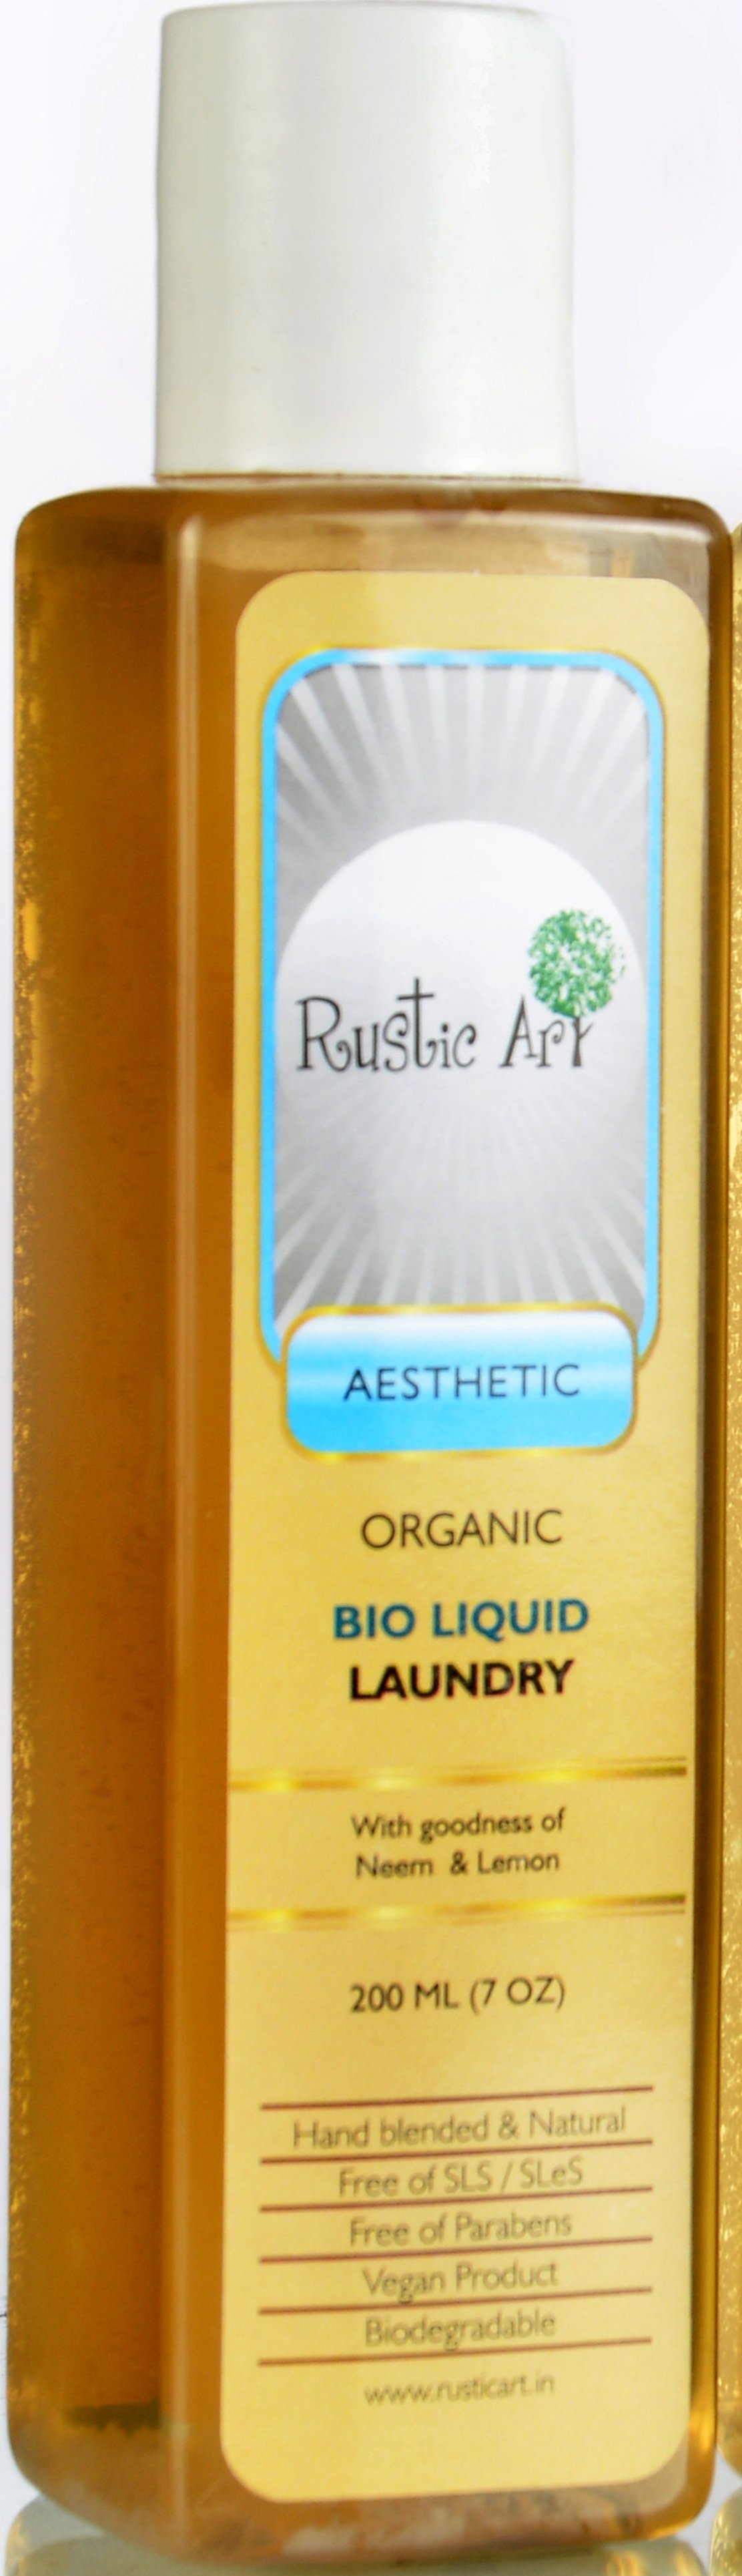 Rustic Art Bio Degradable Bio Liquid Laundry